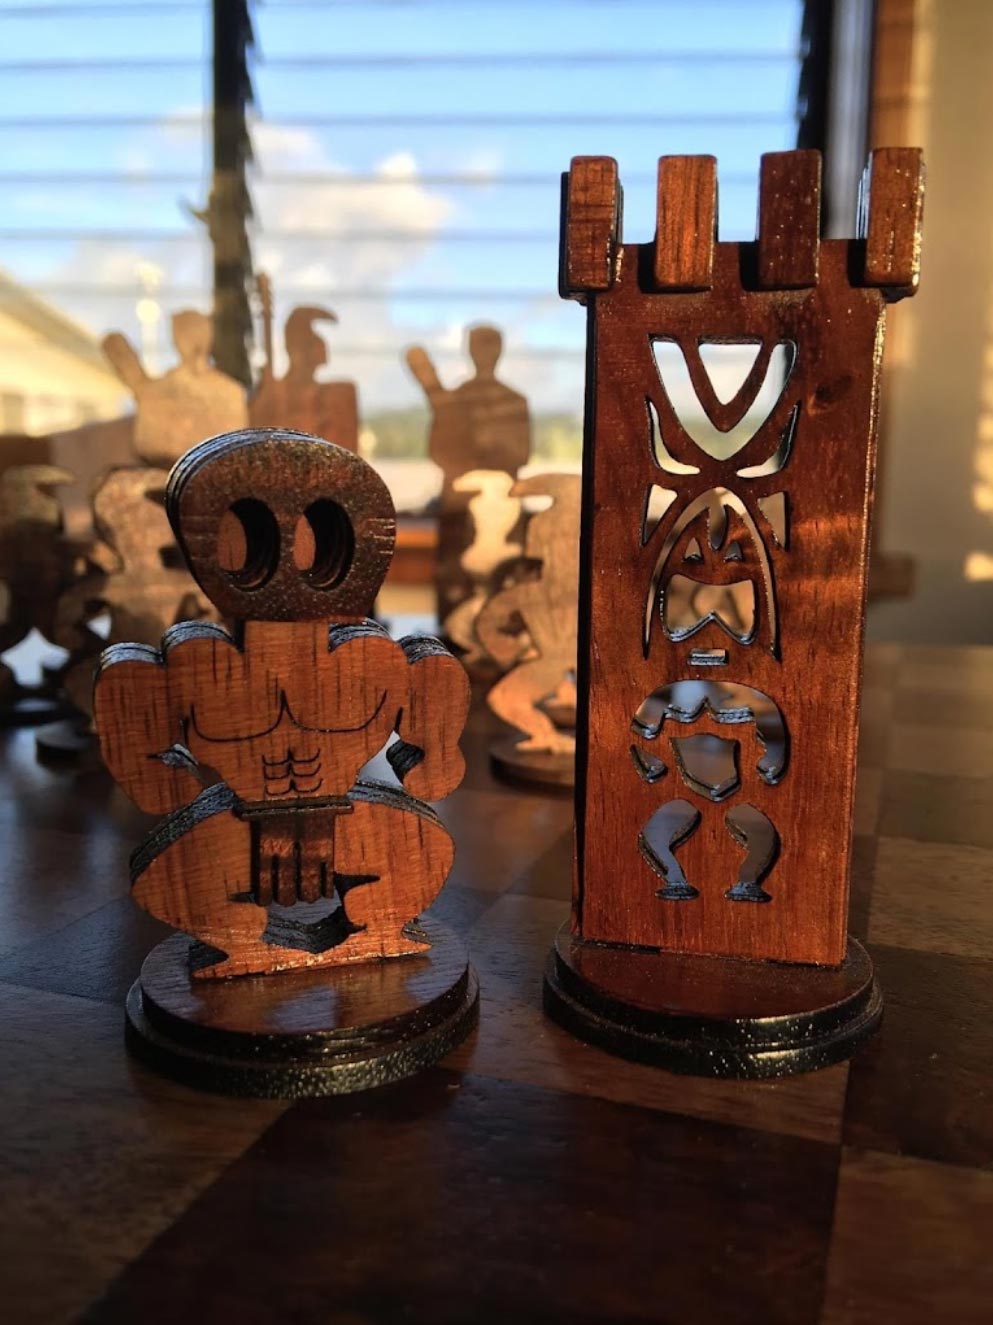 koa wood coasters made in Hawaii